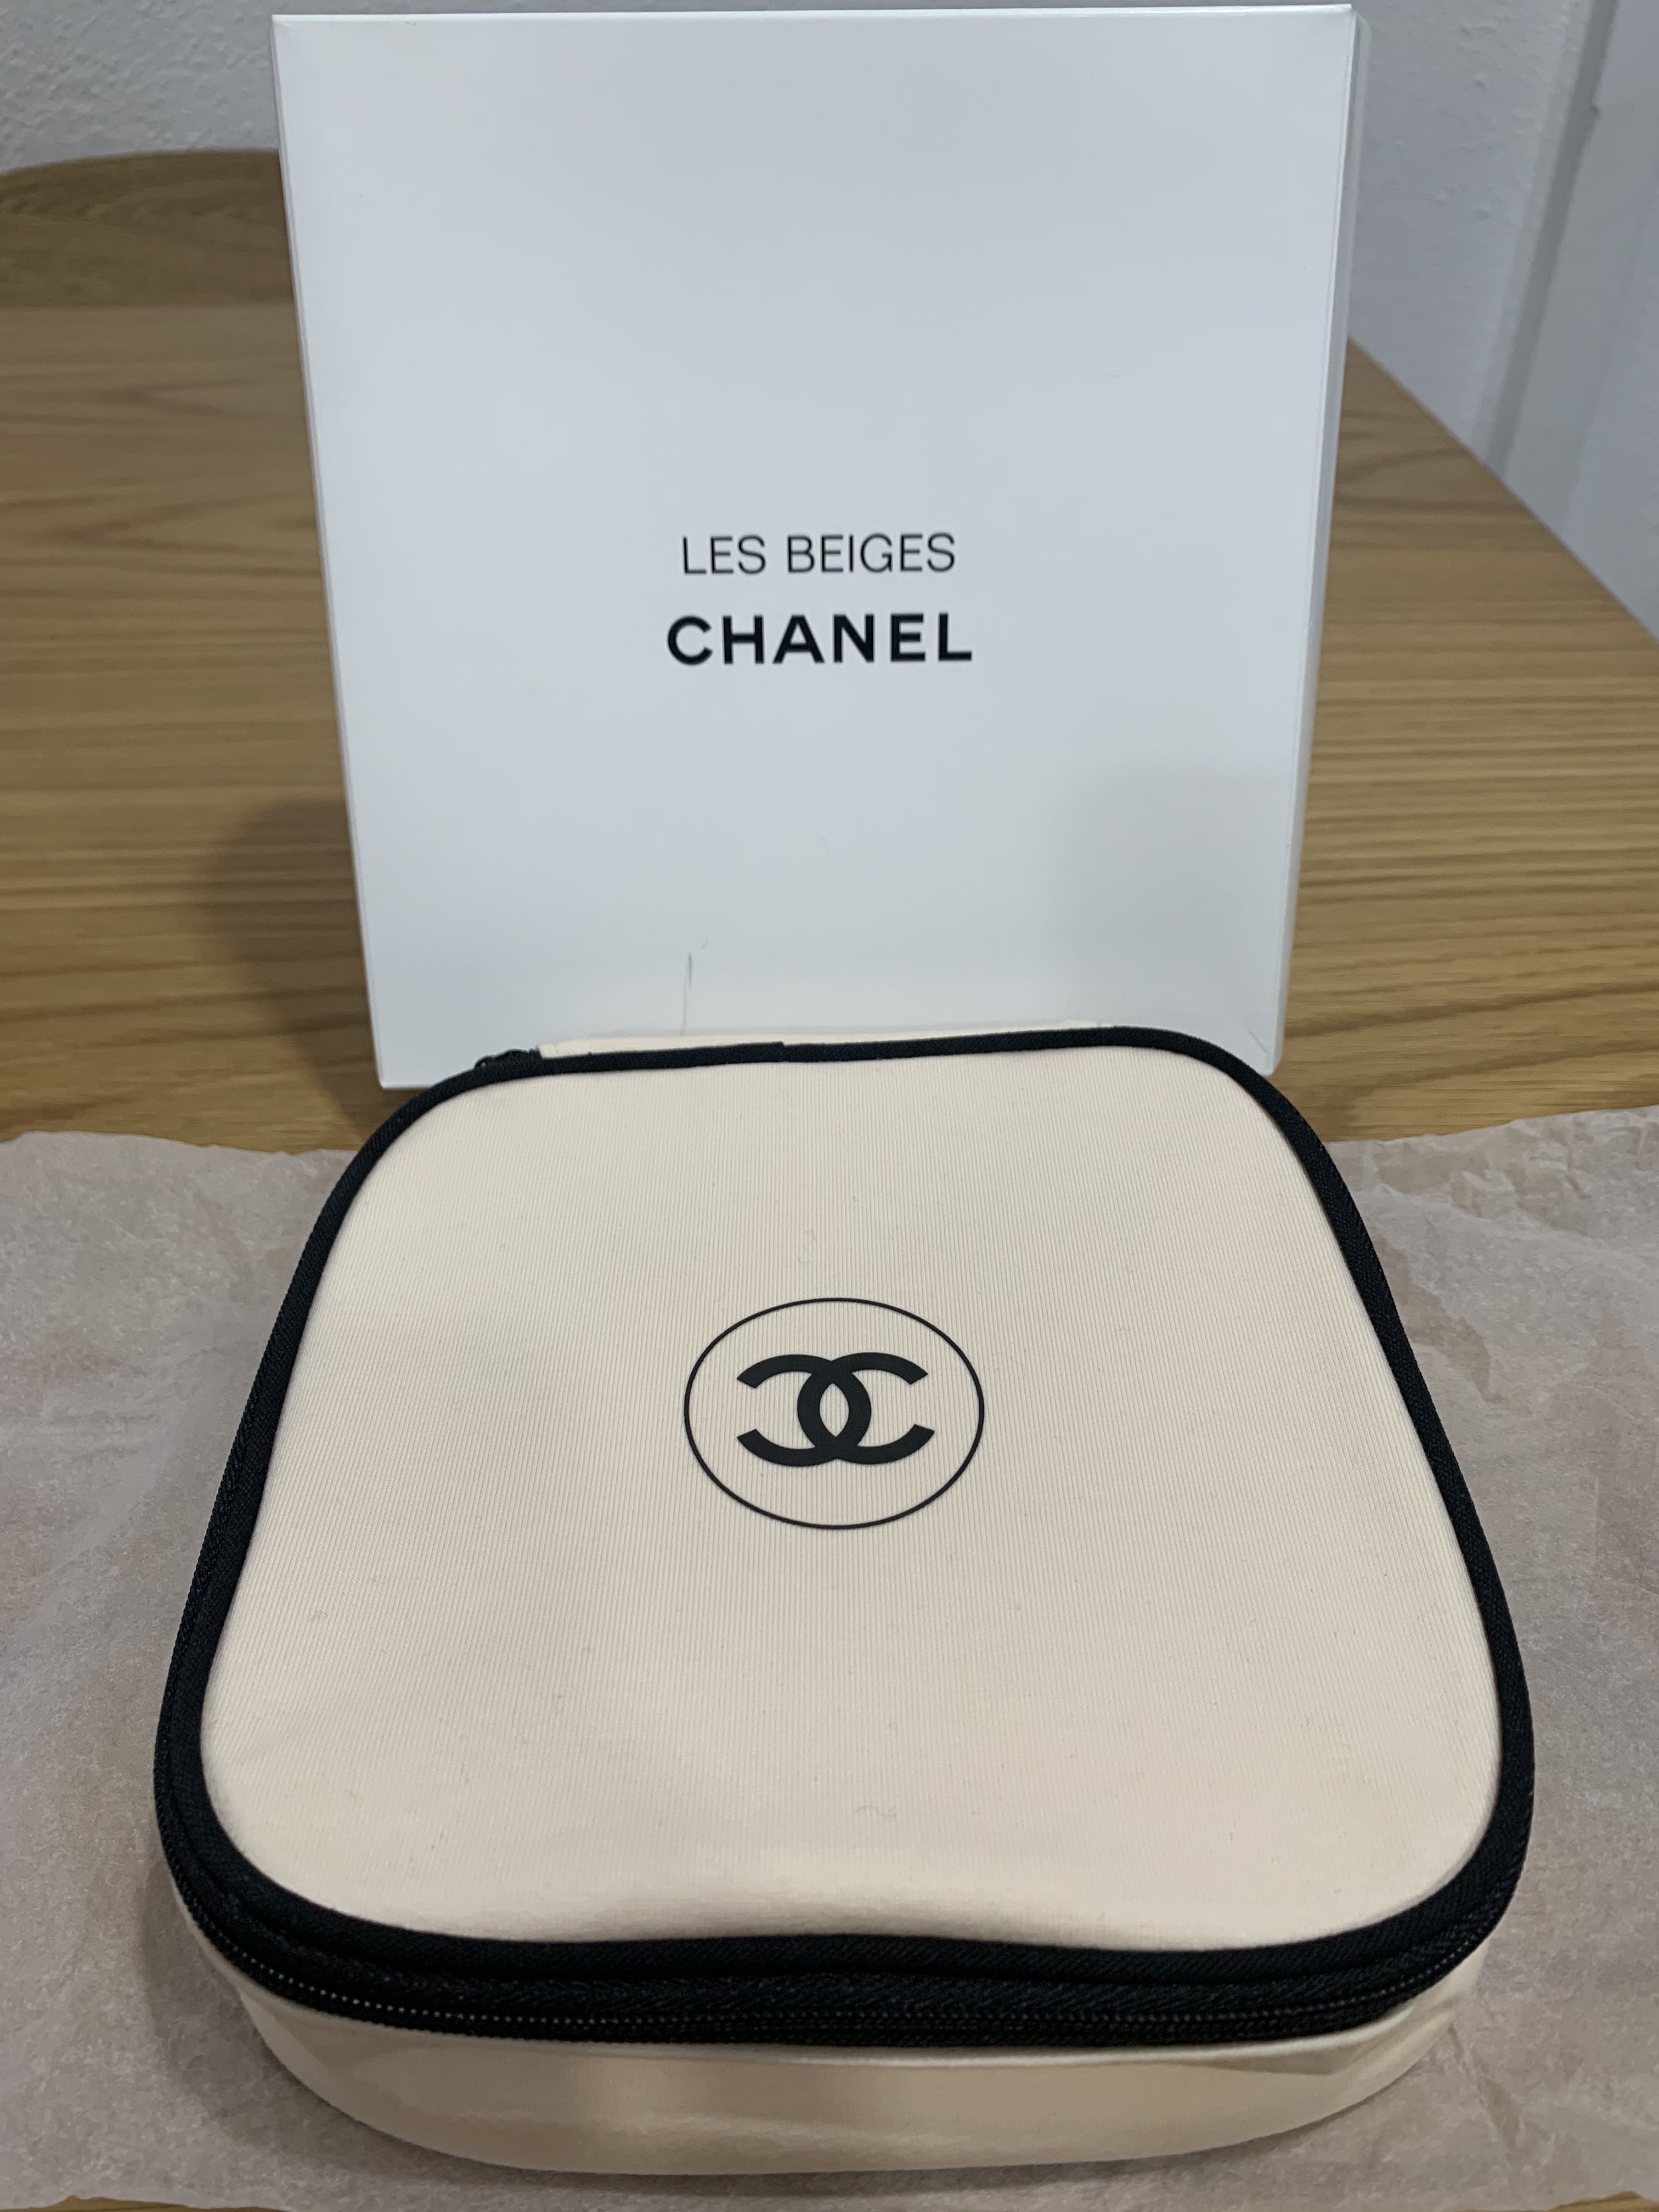 Chanel Les Beige / Sublimage Cosmetics Pouch, Women's Fashion